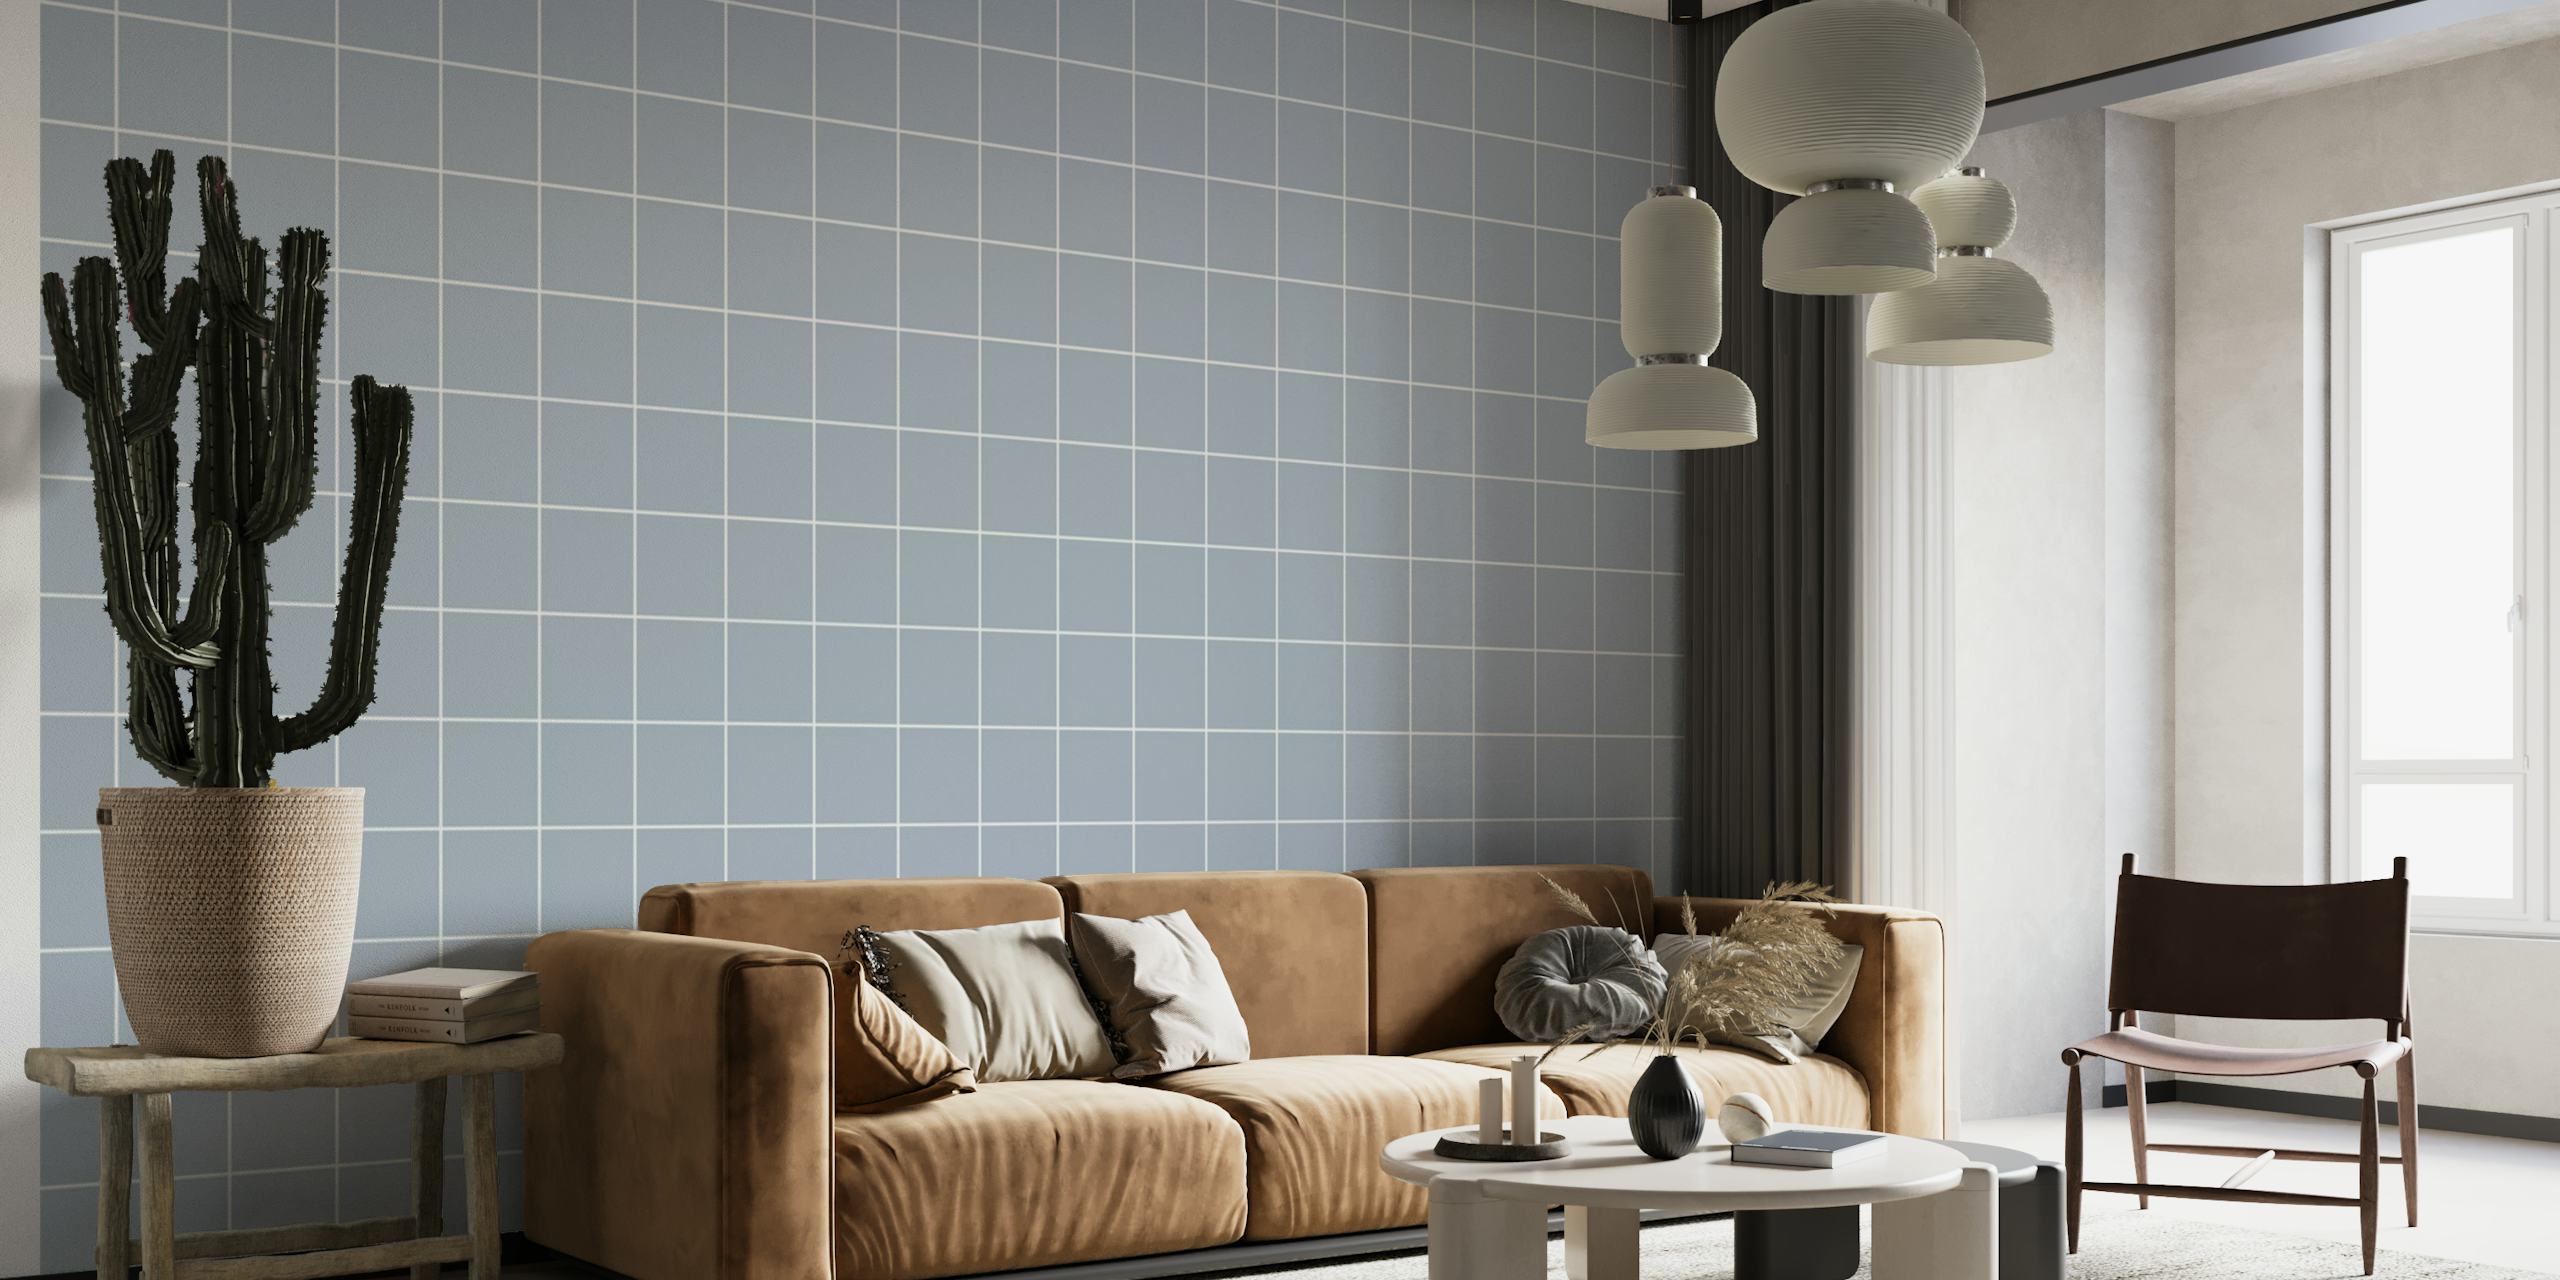 Náladově modrá fototapeta s mřížkovým vzorem pro elegantní dekoraci interiéru